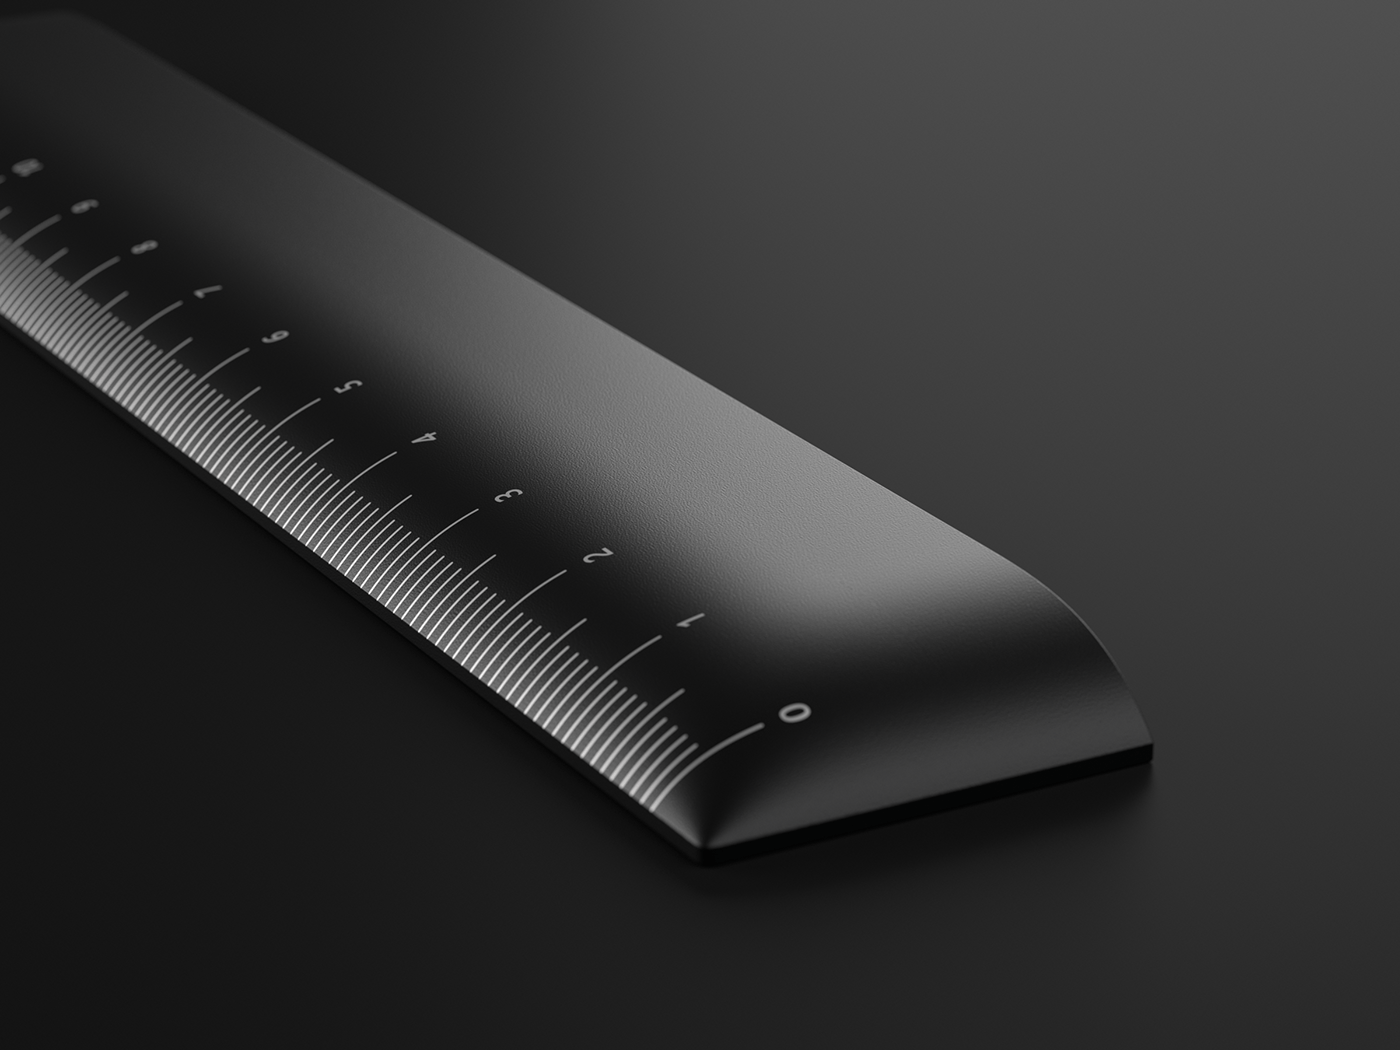 Anodized aluminum black industrial design  Packaging packaging design product design  ruler Stationery